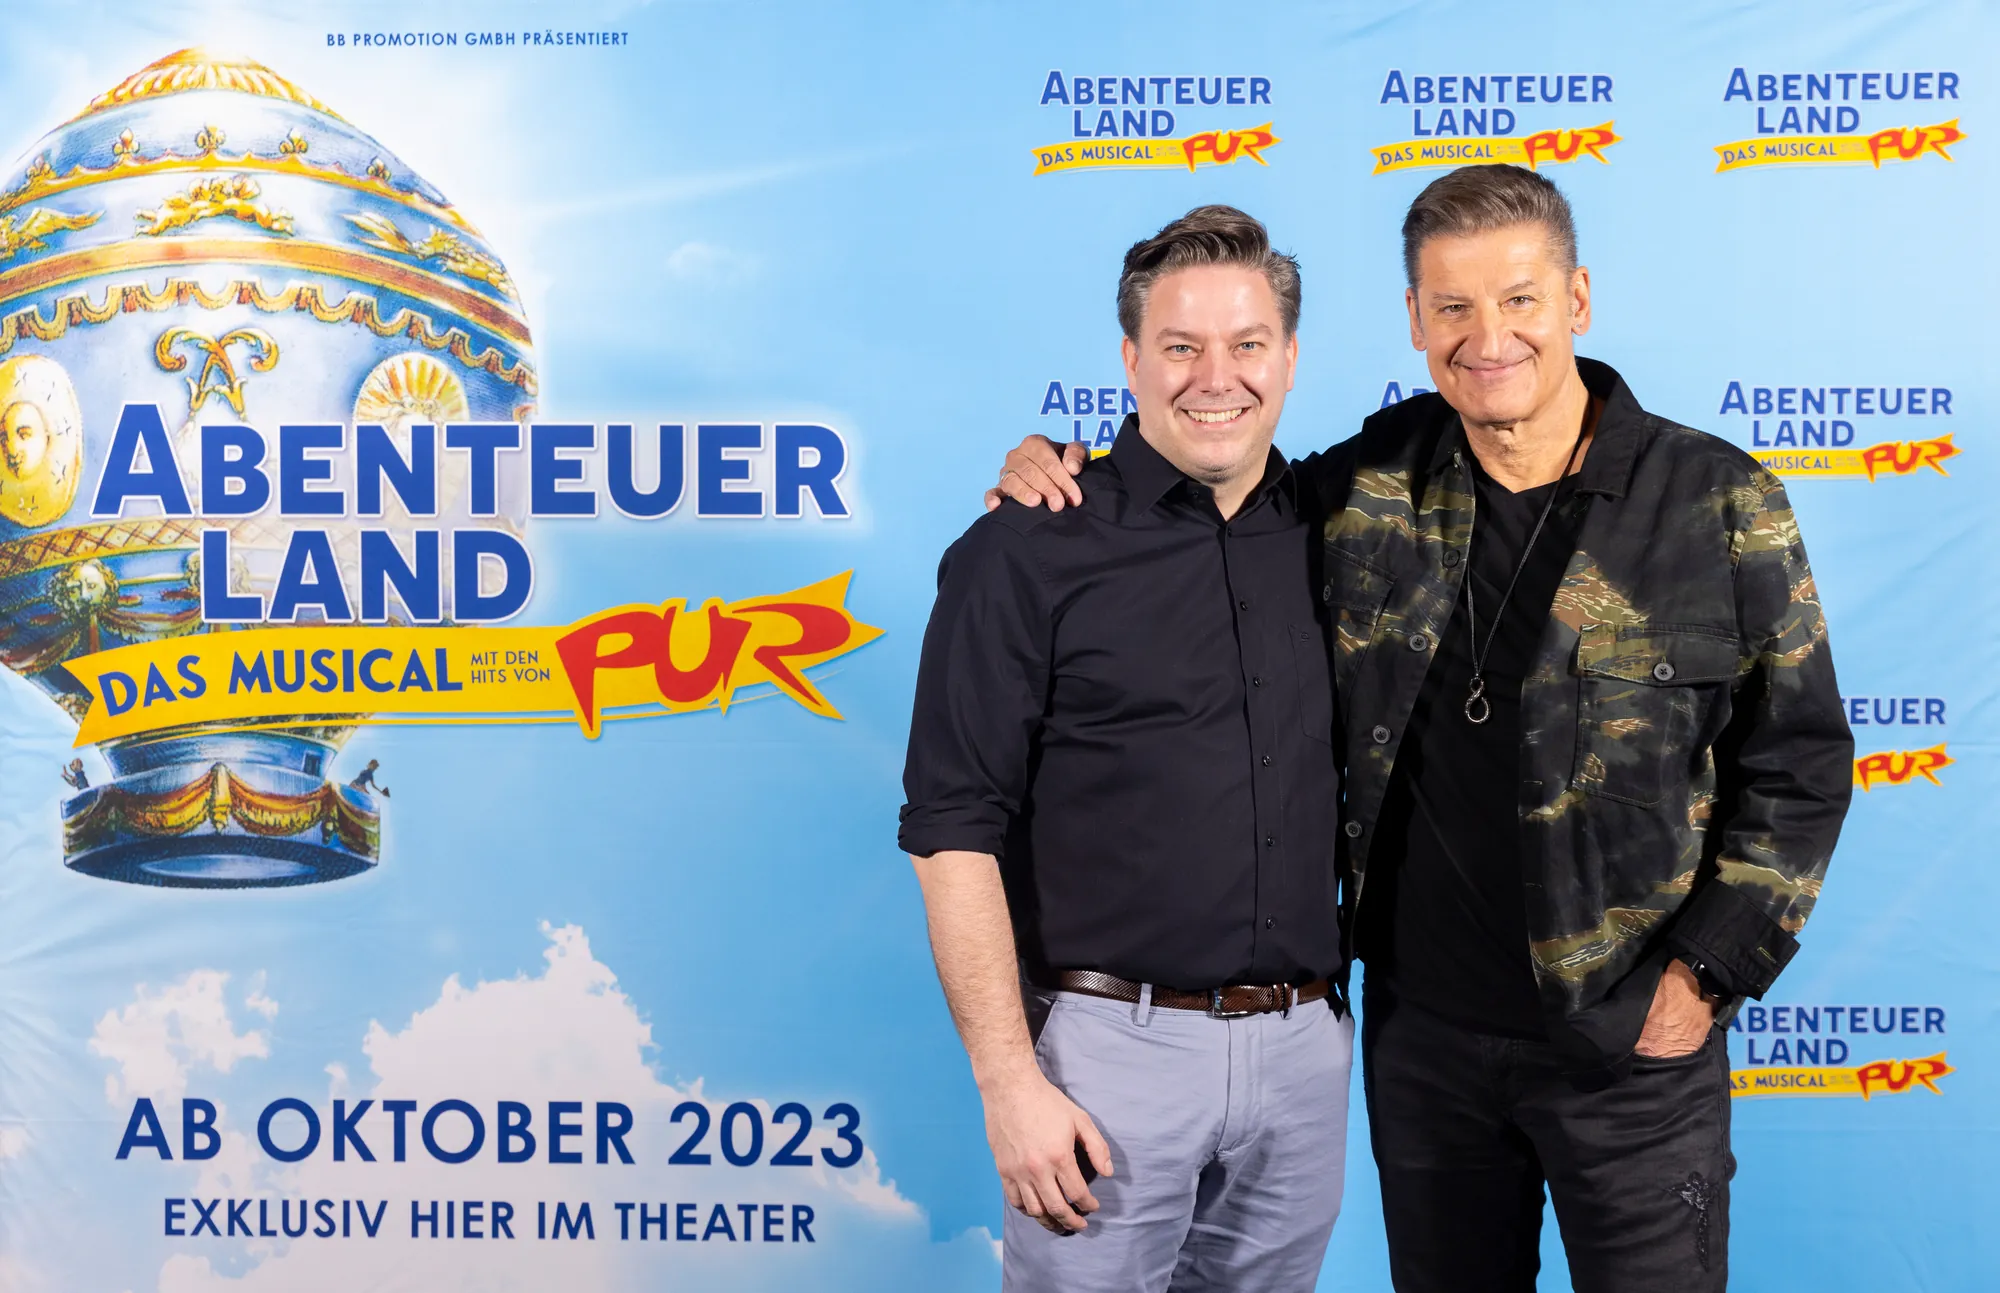 Musical Düsseldorf - Abenteuerland Pressekonferenz mit Martin Flohr und Hartmut Engler Arm in Arm und lächelnd vor dem Abenteuerland Logo